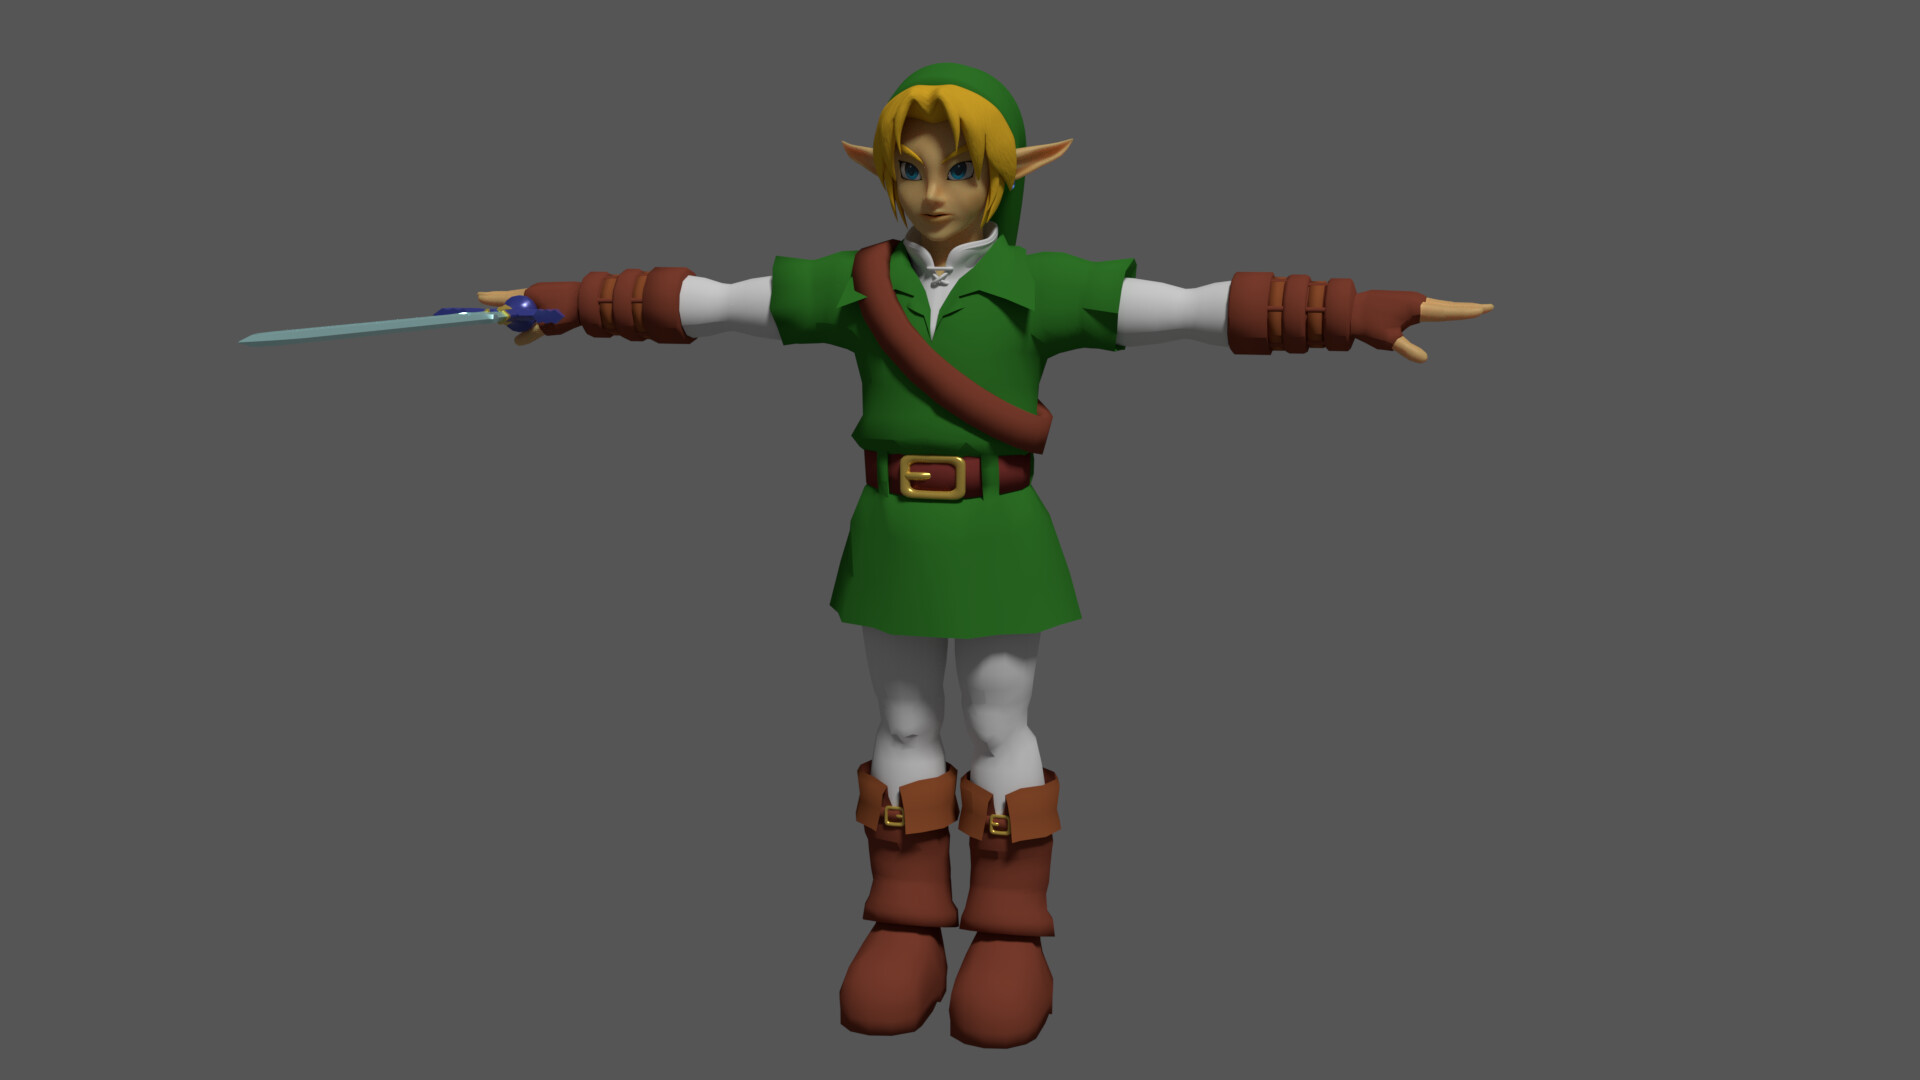 ArtStation - Reimagining Link from The legend of Zelda: Ocarina of time